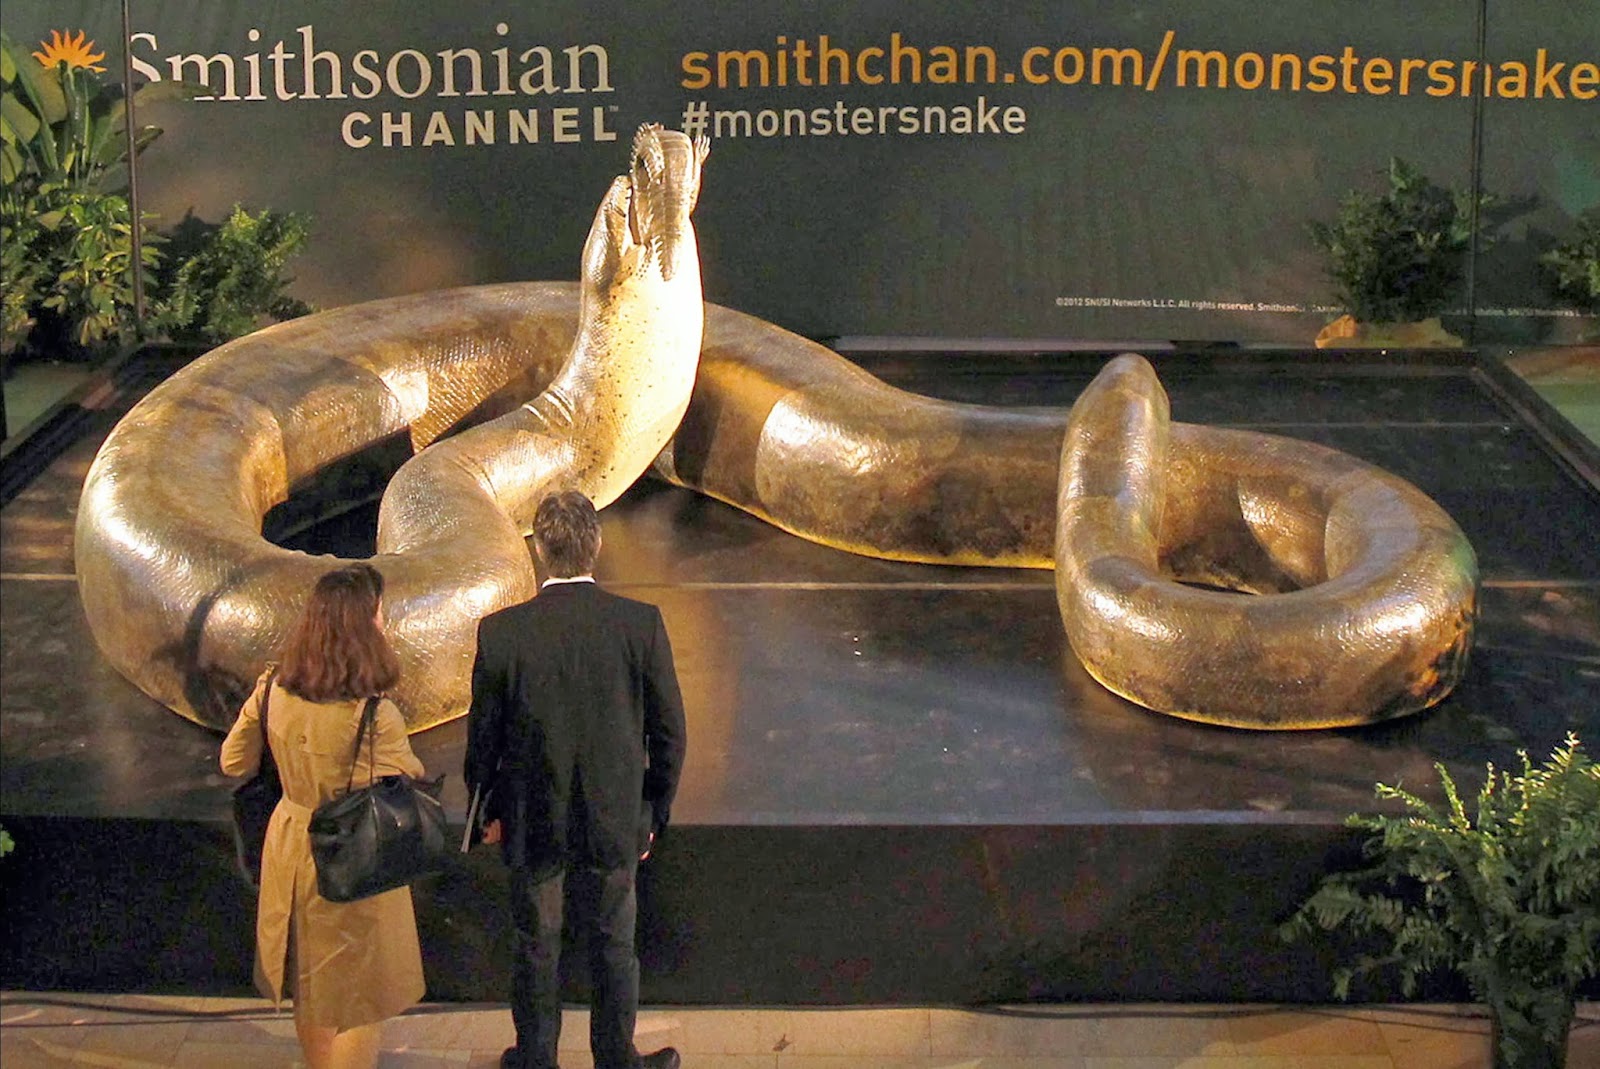 Giant Anacondas And Other Super-Sized Cryptozoological Snakes 42